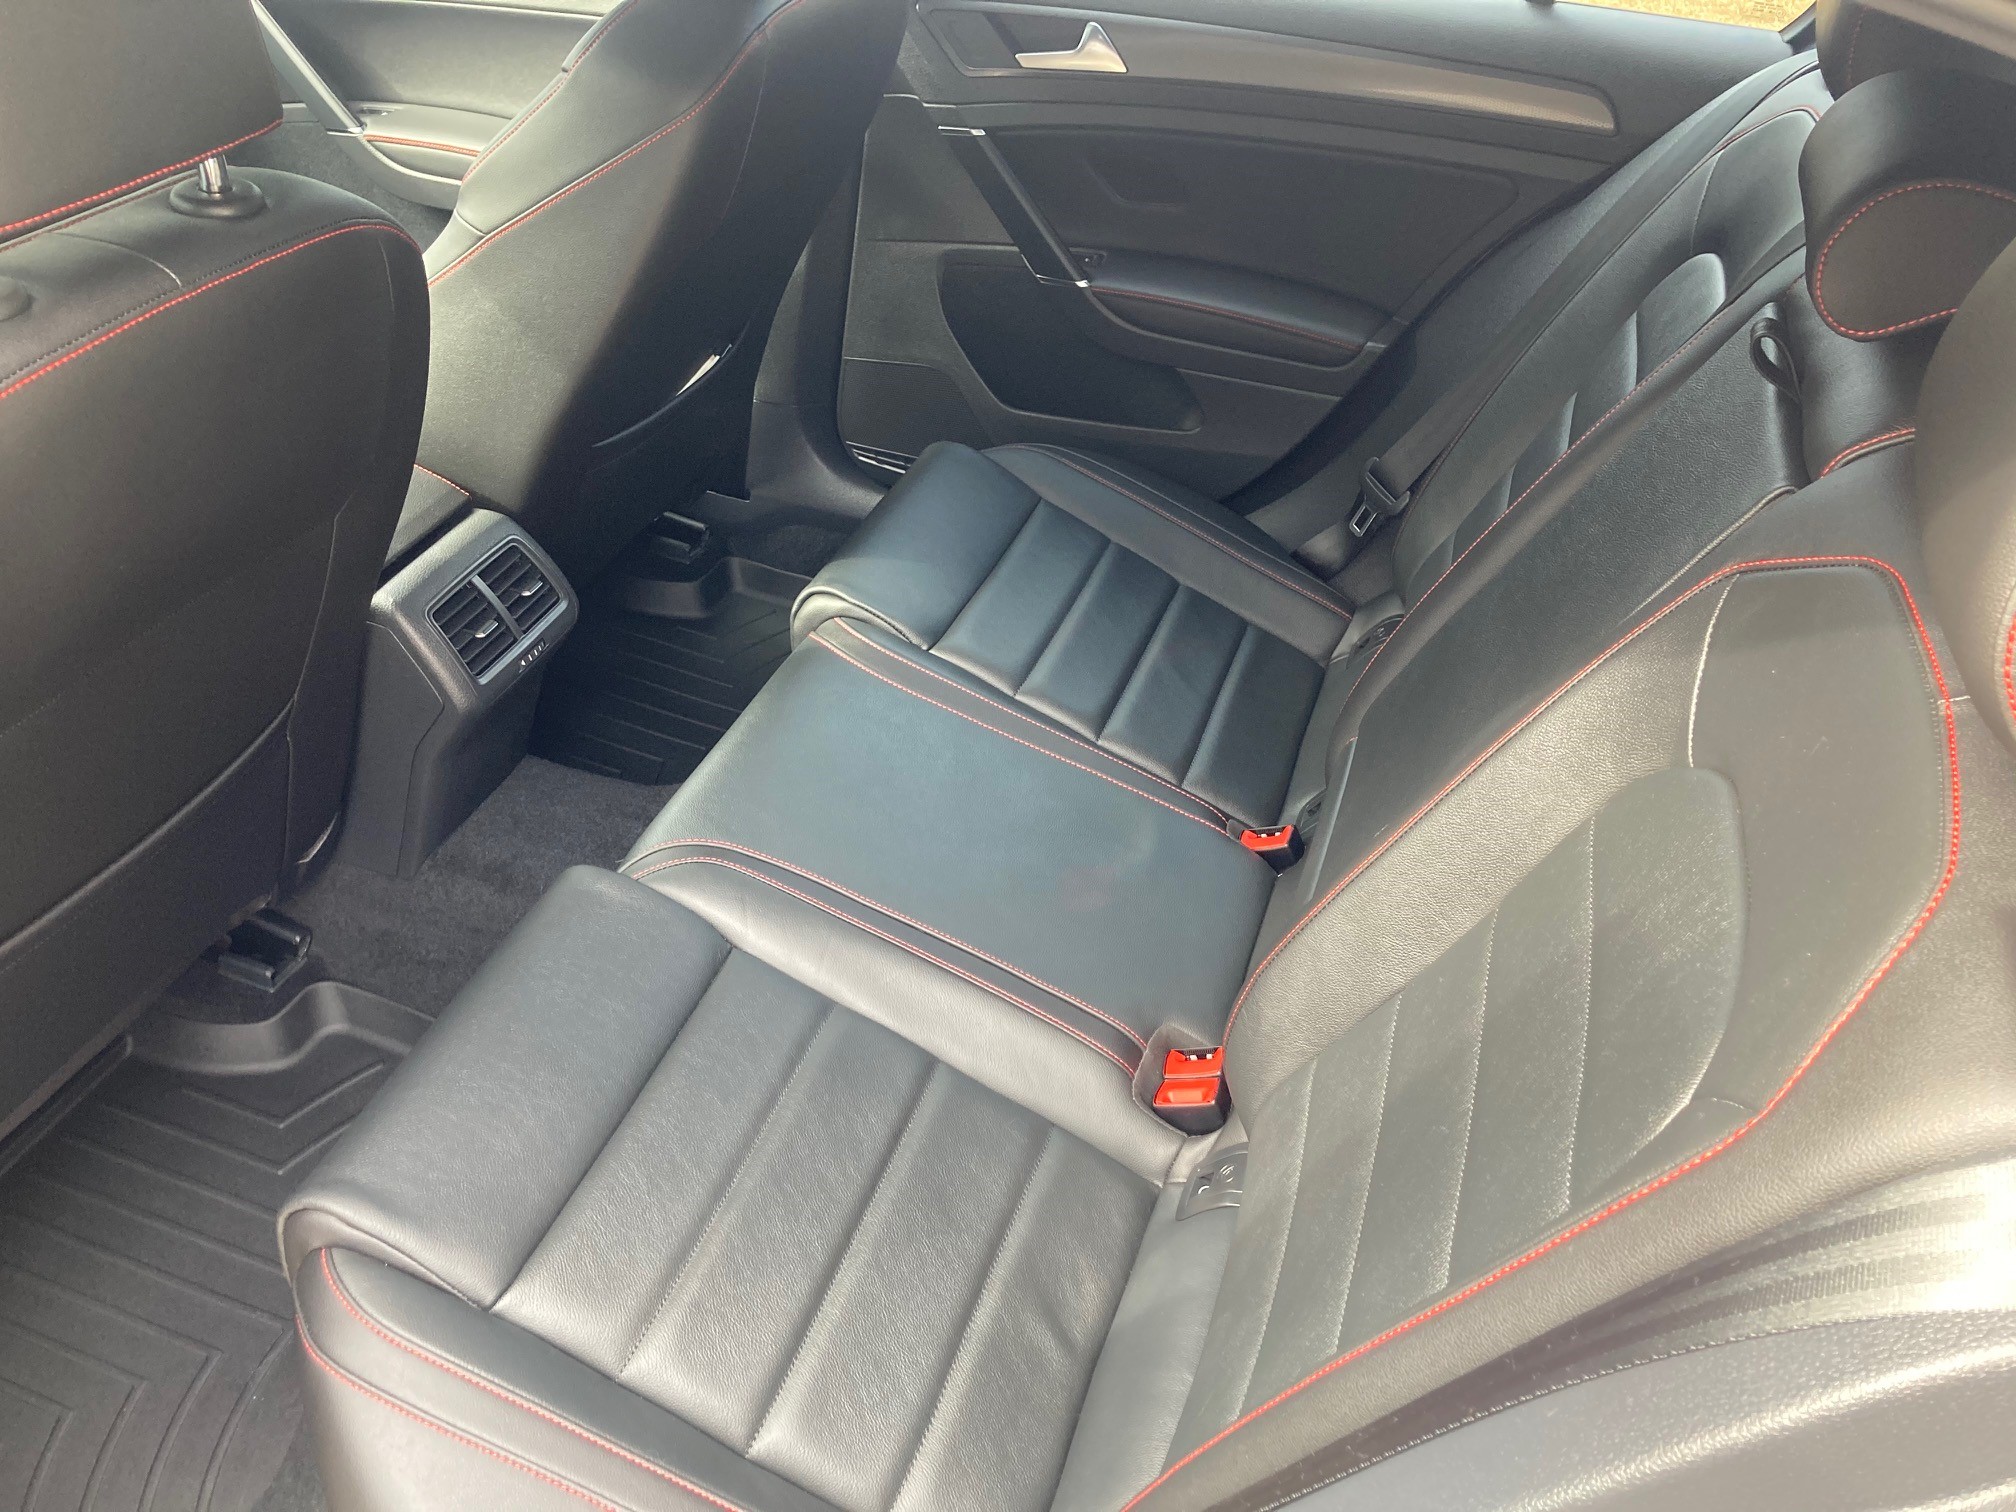 VW Interior Rear Seats.jpg